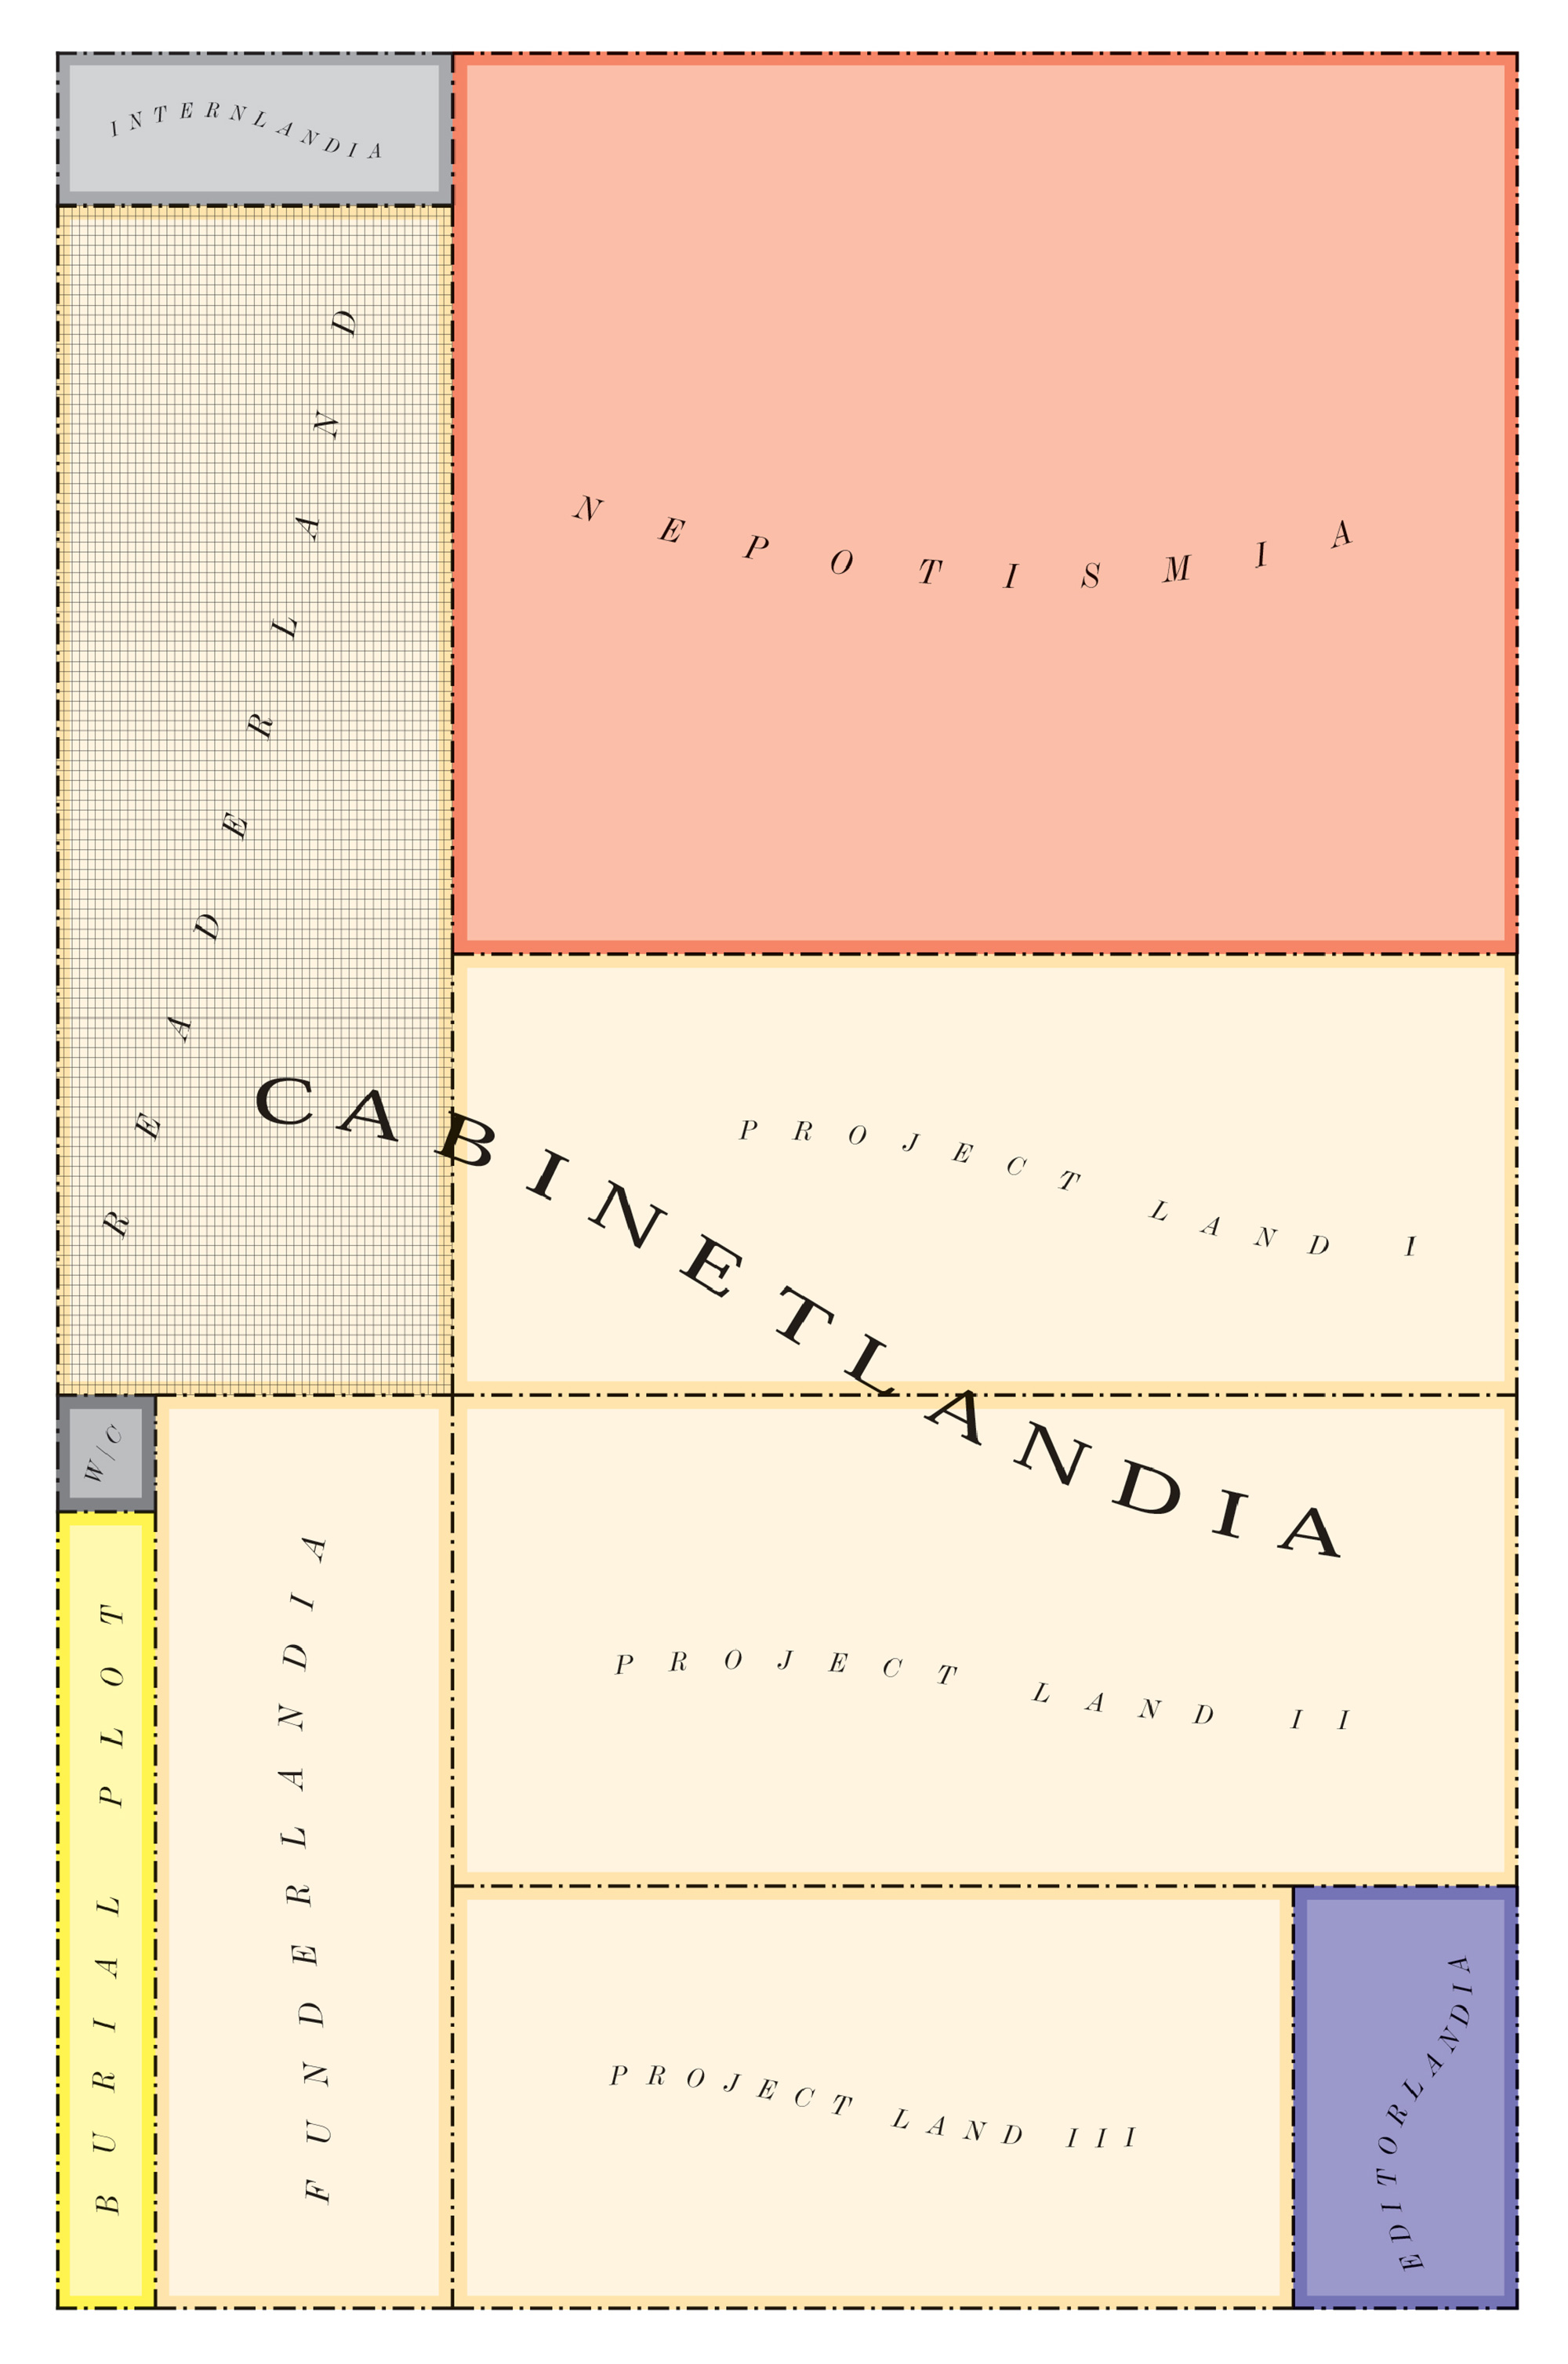 A map of Cabinetlandia, portioned into Readerland, Editorlandia, Internlandia, and more.